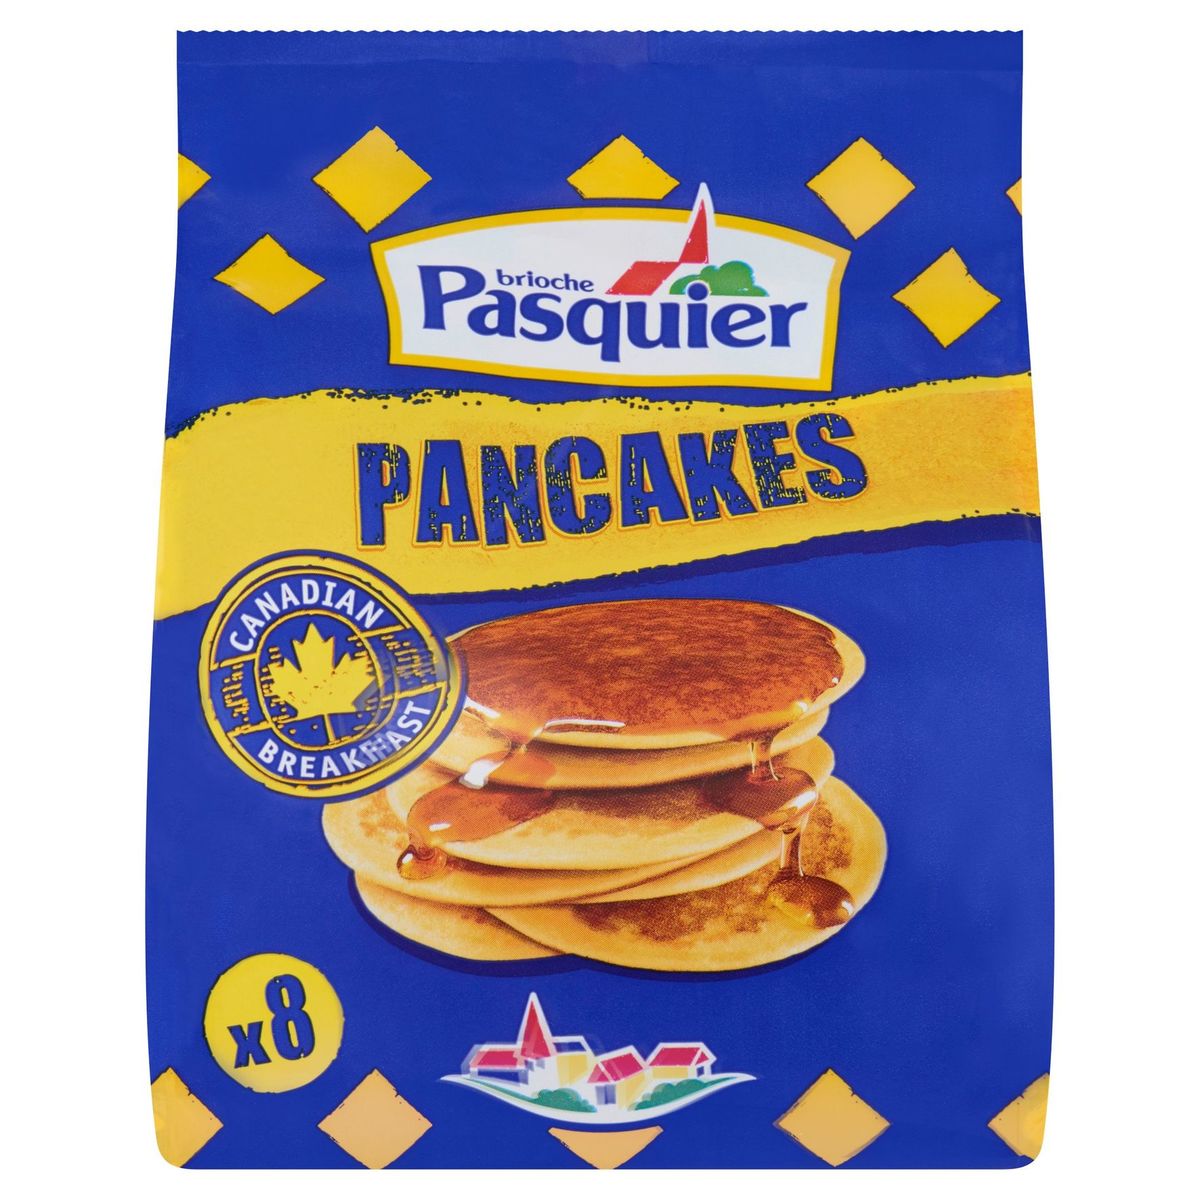 Brioche Pasquier Pancakes 8 x 35 g